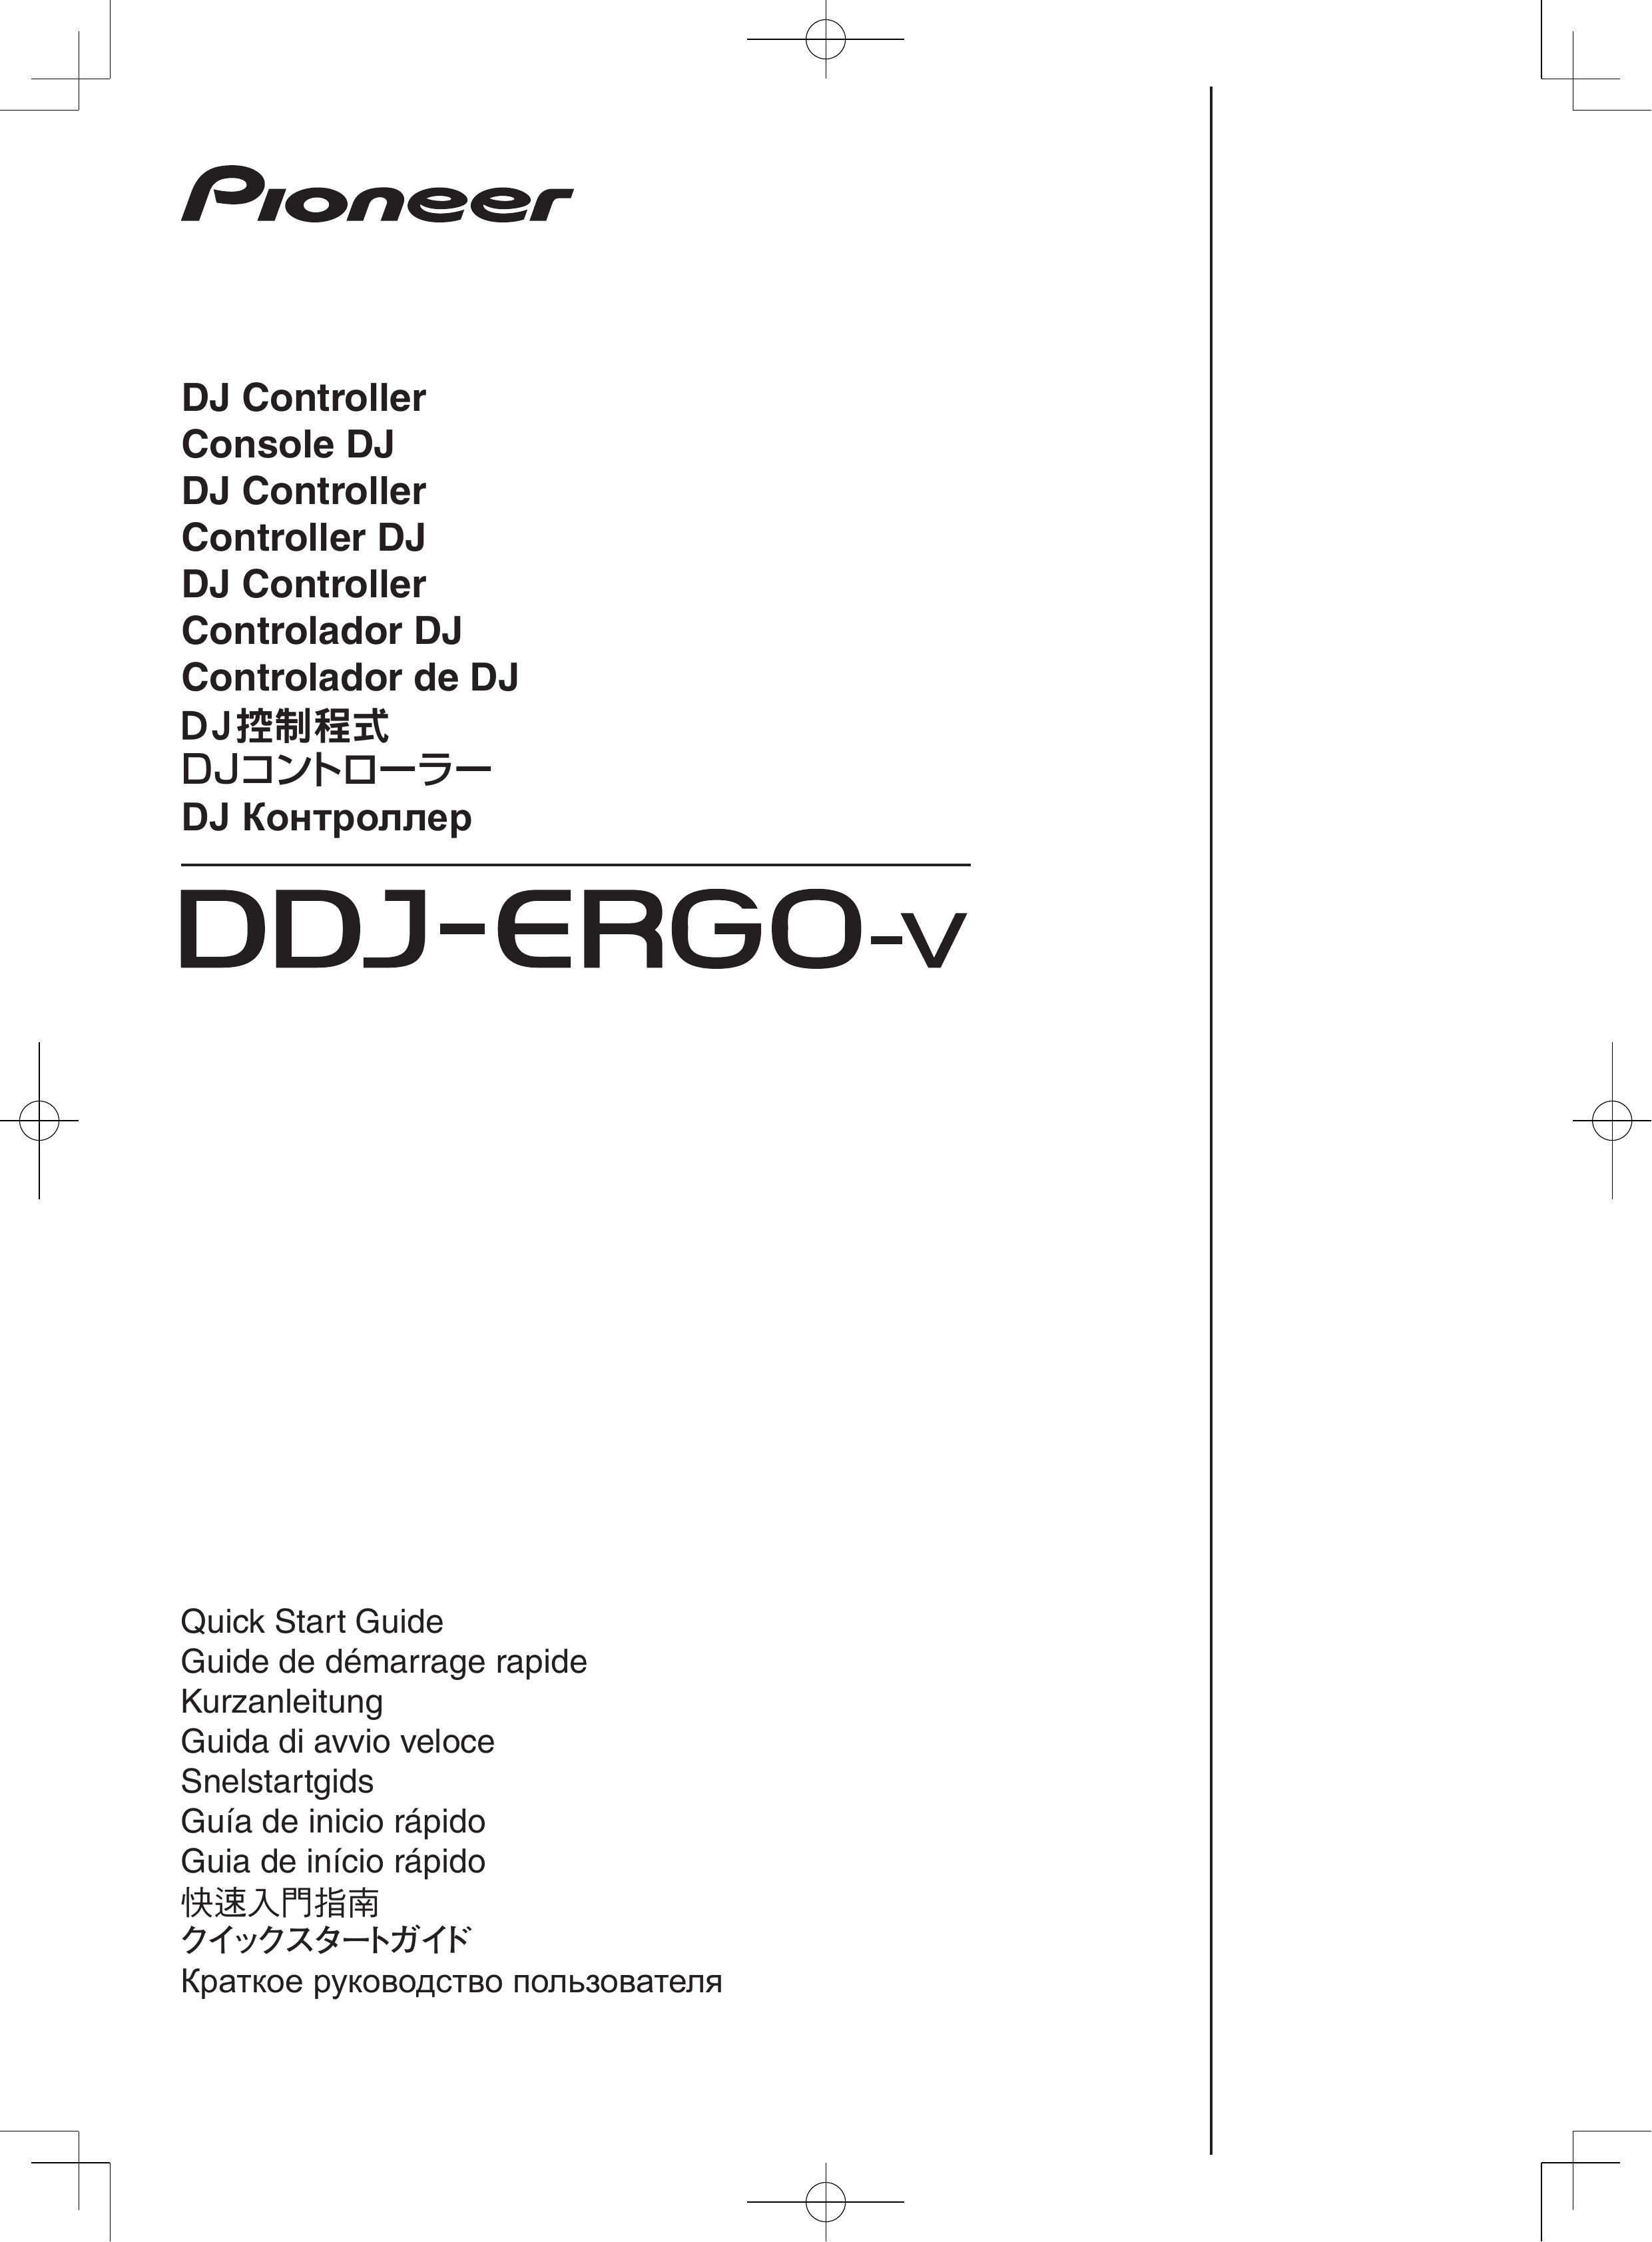 Pioneer DDJ-ERGO-V DJ Equipment User Manual